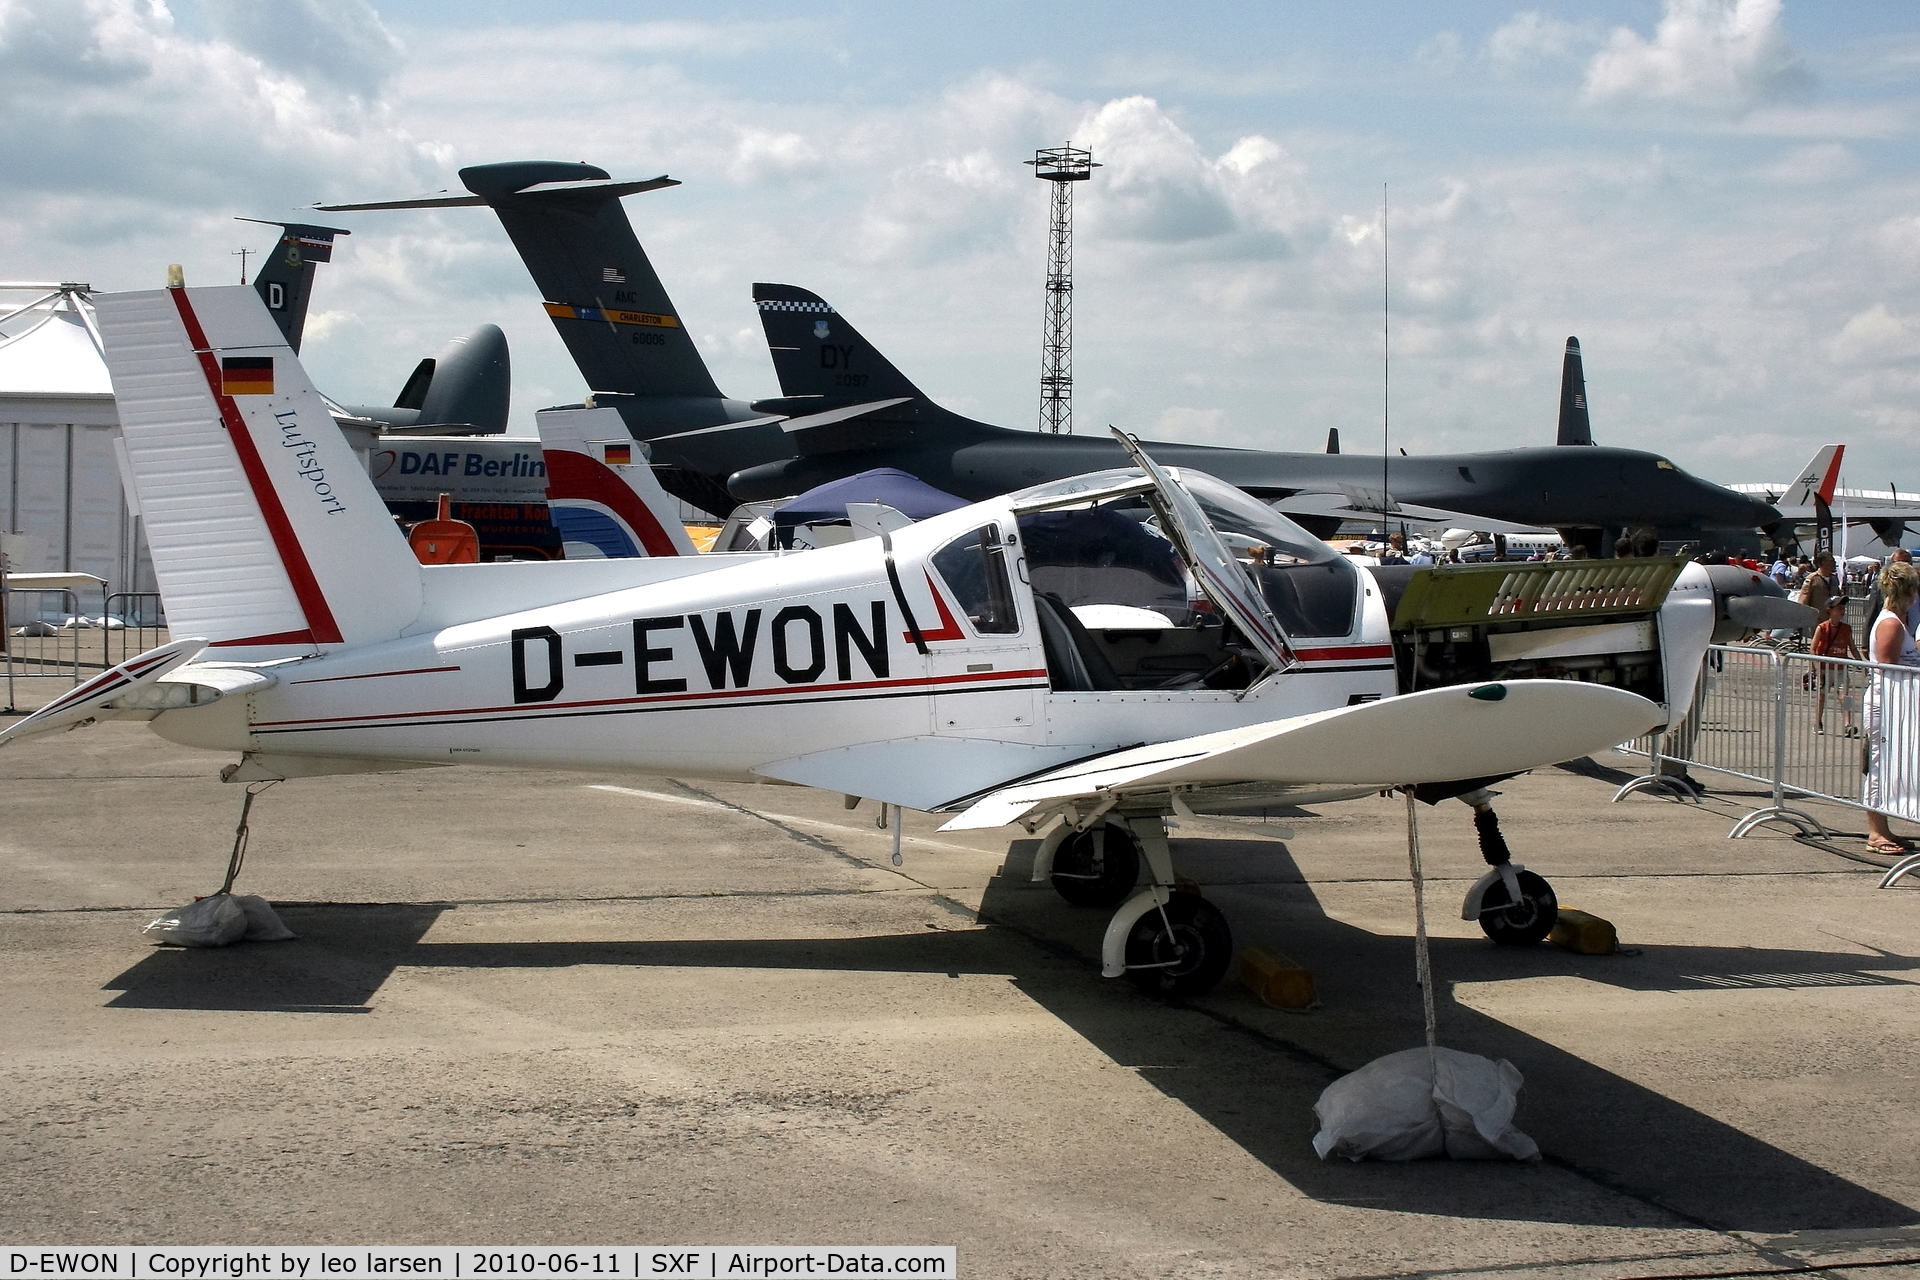 D-EWON, 1978 Zlin Z-42M C/N 0132/05, Berlin Air Show 11.6.2010